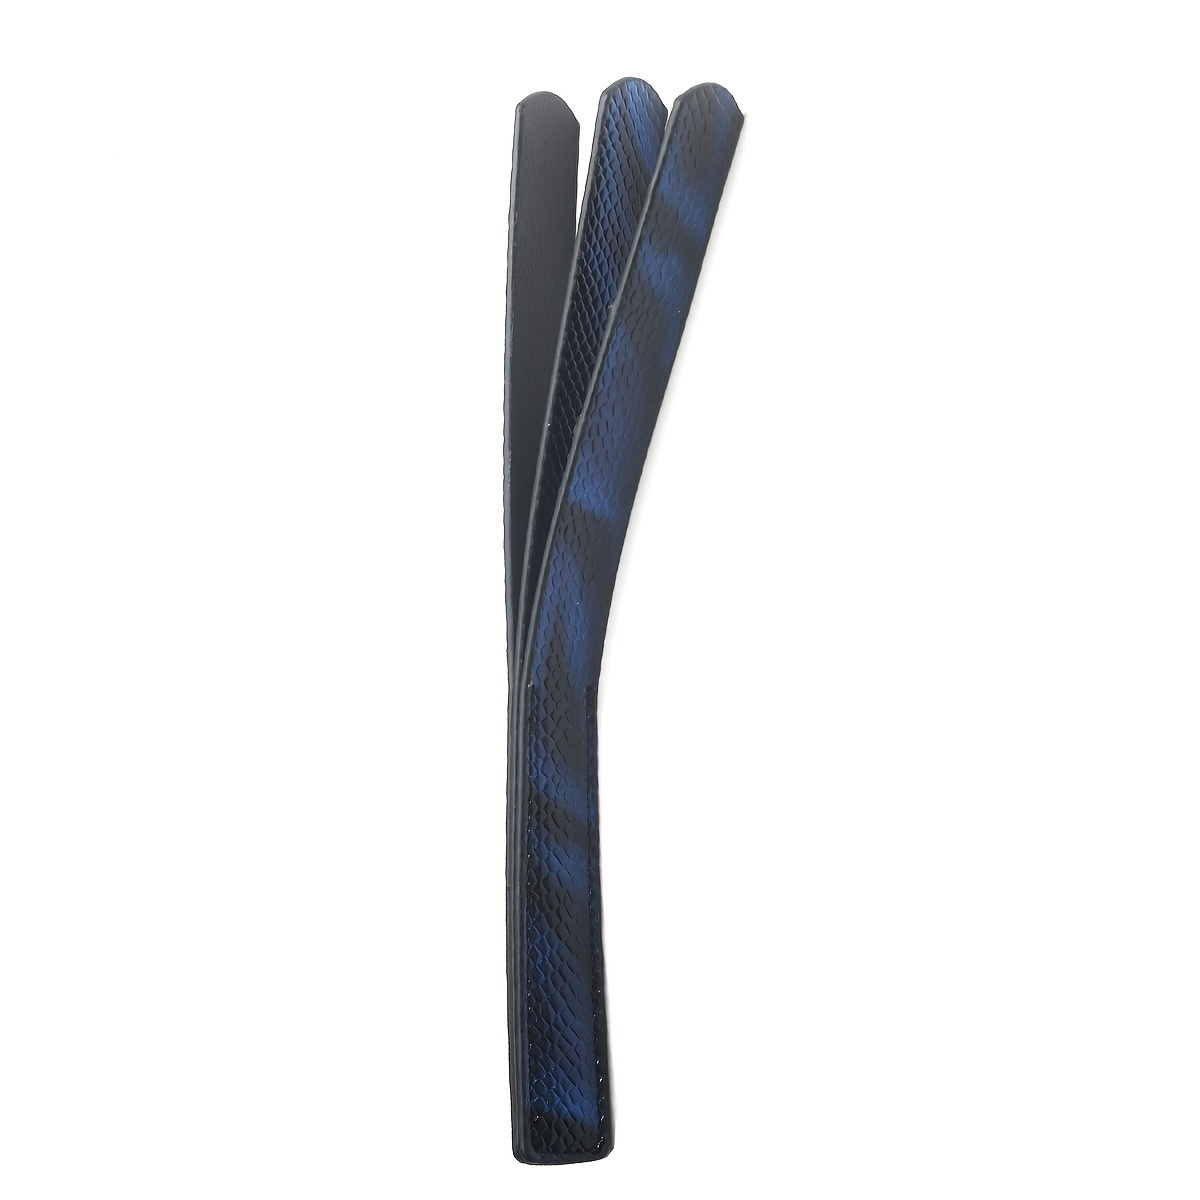 Leather Handmade Spanking Paddle 5 Pcs Set Best Flogger Whip Adult